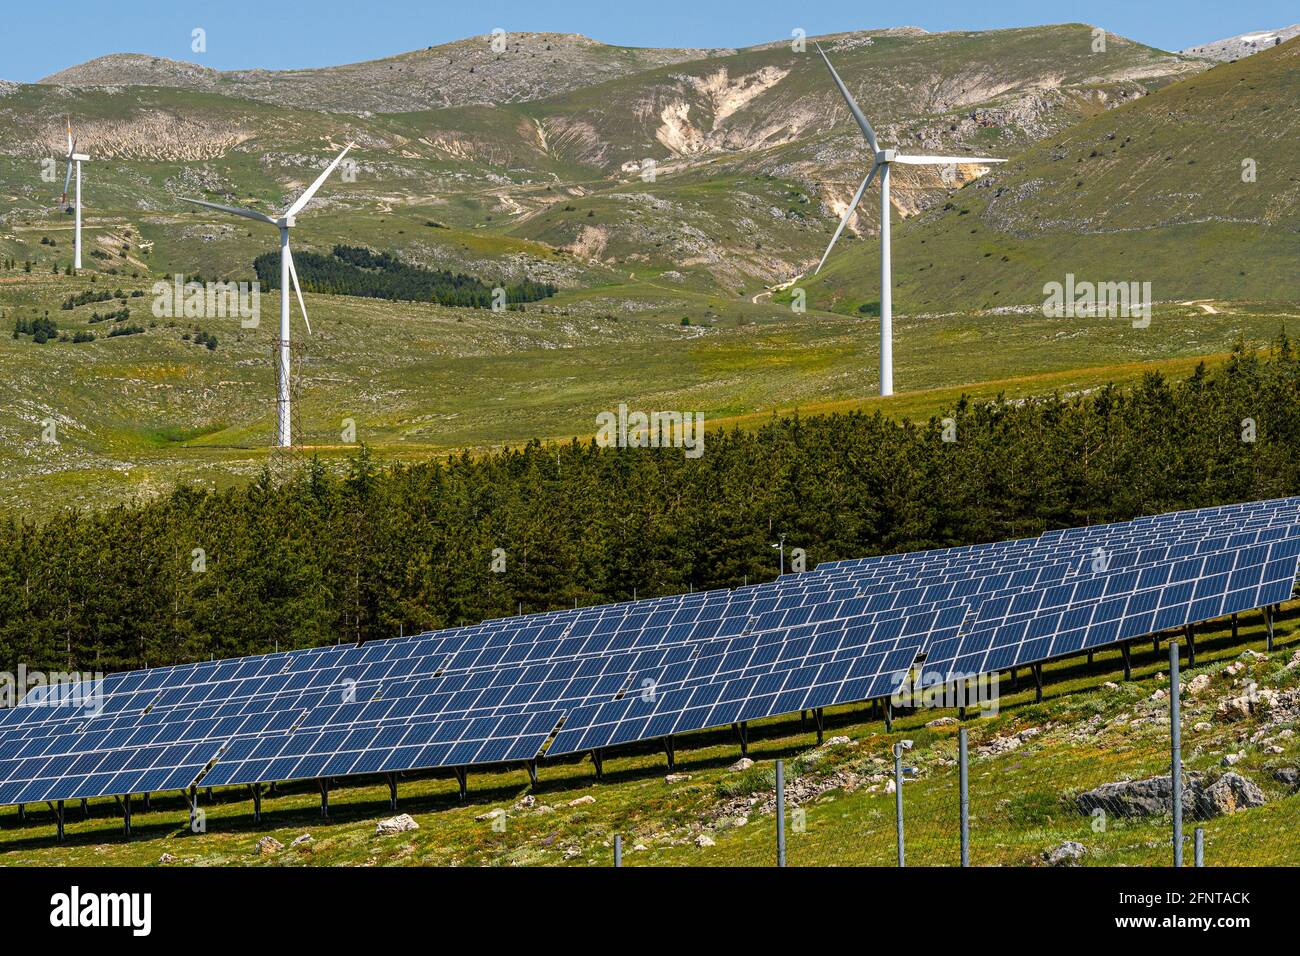 Sonnenkollektoren und Windturbinen zur Erzeugung erneuerbarer und umweltfreundlicher Energie. Collarmele, Provinz L'Aquila, Abruzzen, Italien, Europa Stockfoto